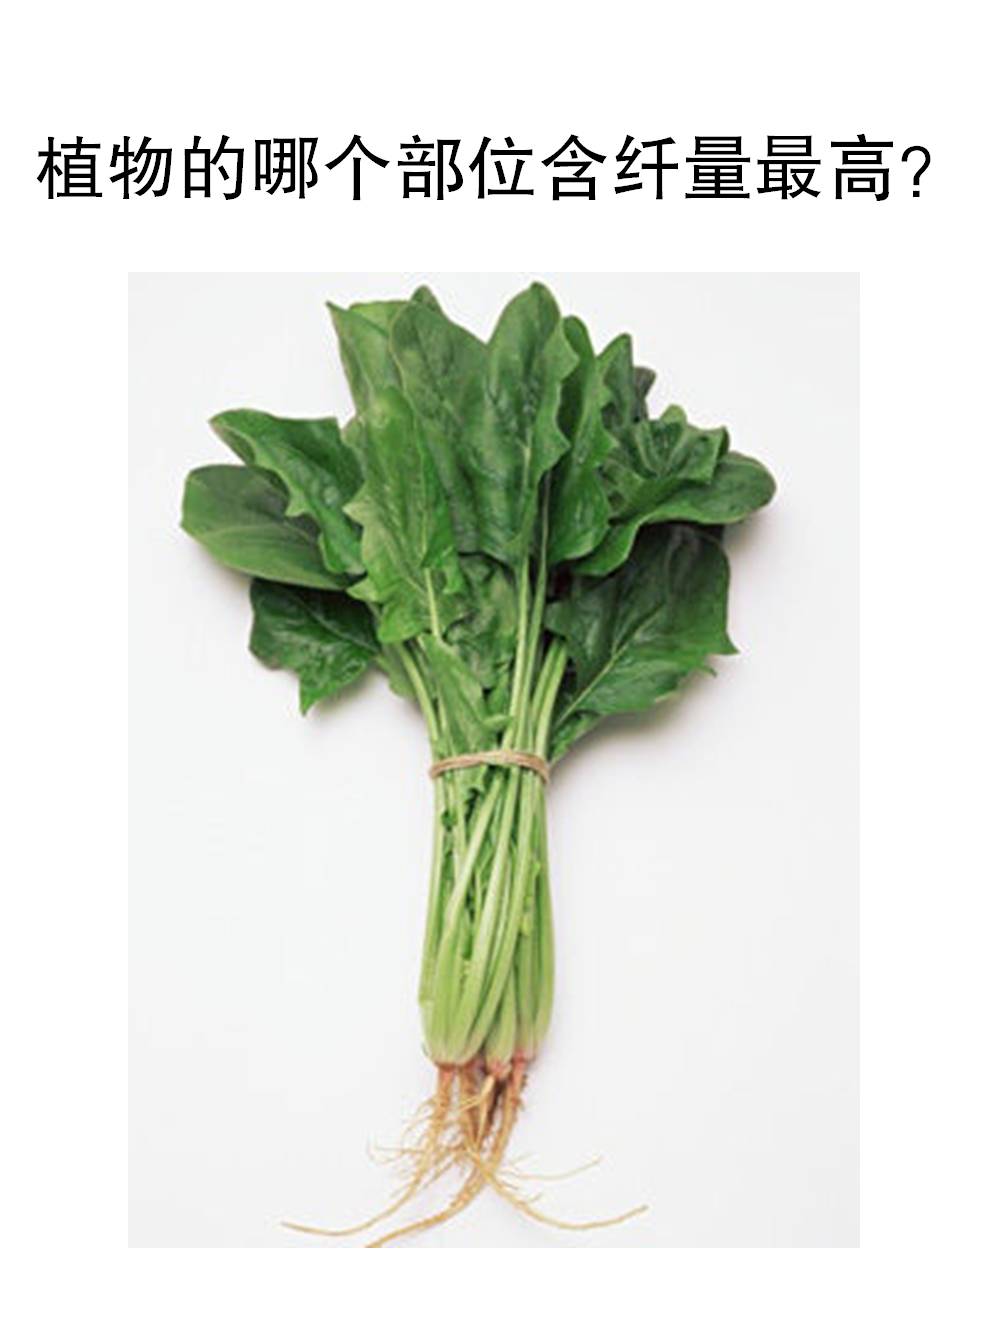 蔬菜哪个部分，纤维最高和均衡？